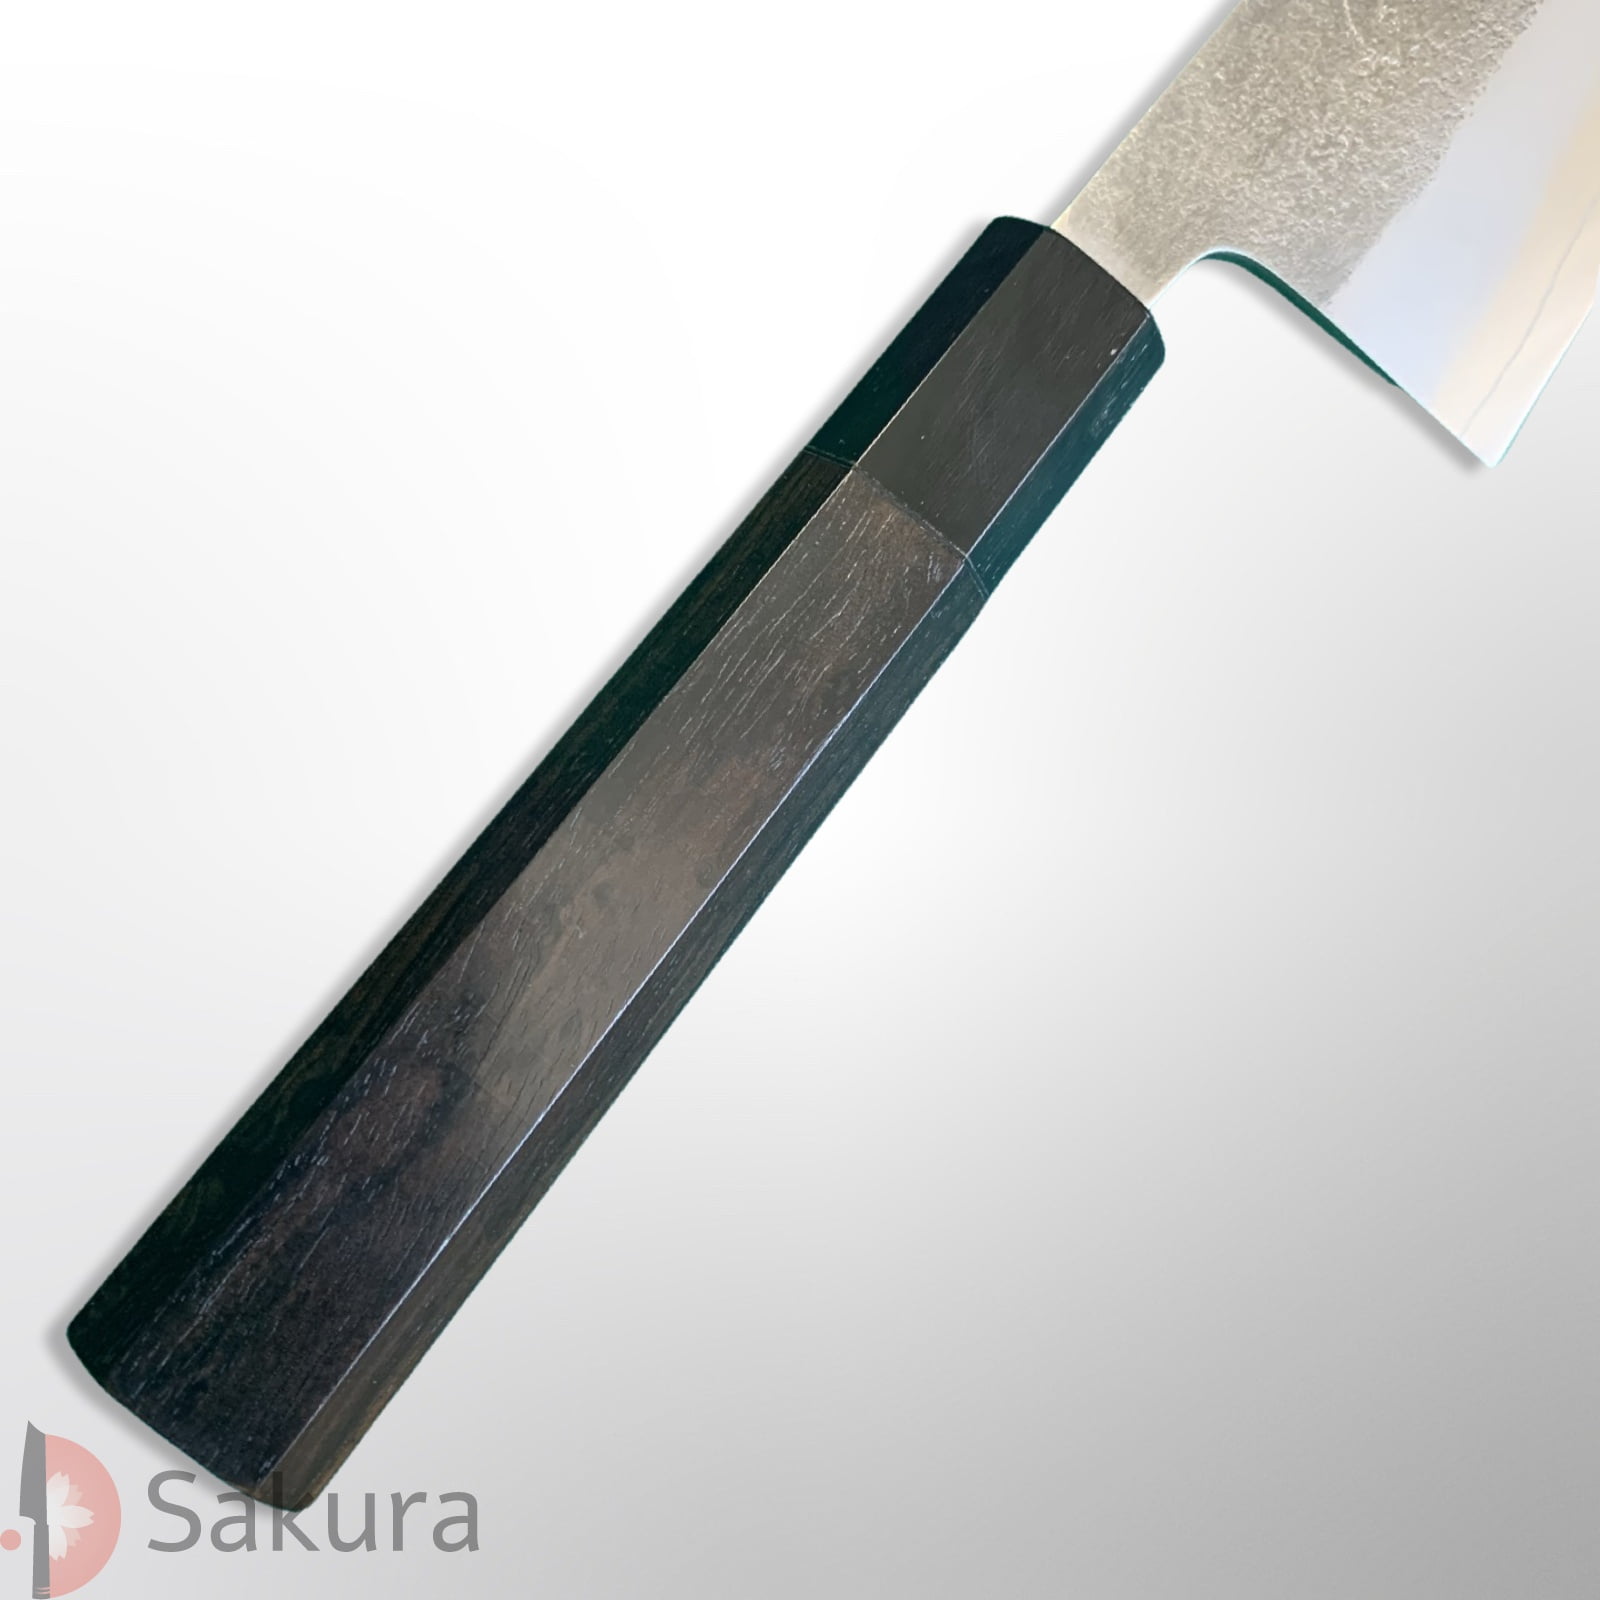 סכין רב-תכליתית סָנטוֹקוּ 165מ״מ מחושלת בעבודת יד 3 שכבות: פלדת פחמן יפנית מתקדמת מסוג SKD  פלדת אל-חלד גימור אל-חלד קורואוצ׳י מט חיספוס טבעי יושיקאנה יפן – SKYOSHSKDSANTO16524